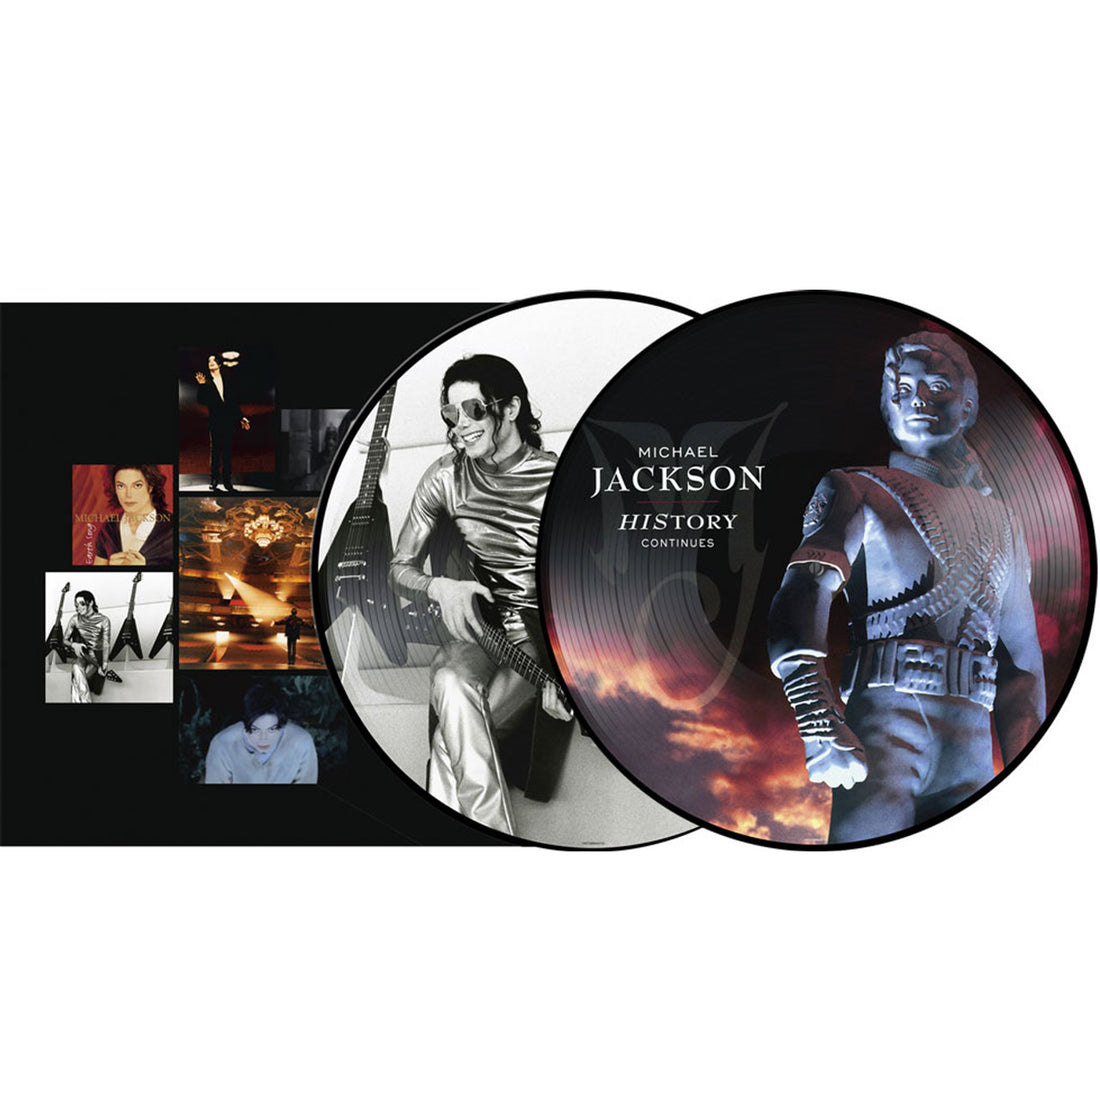 Michael Jackson "History Continues" 2xLP Picture Disc Vinyl